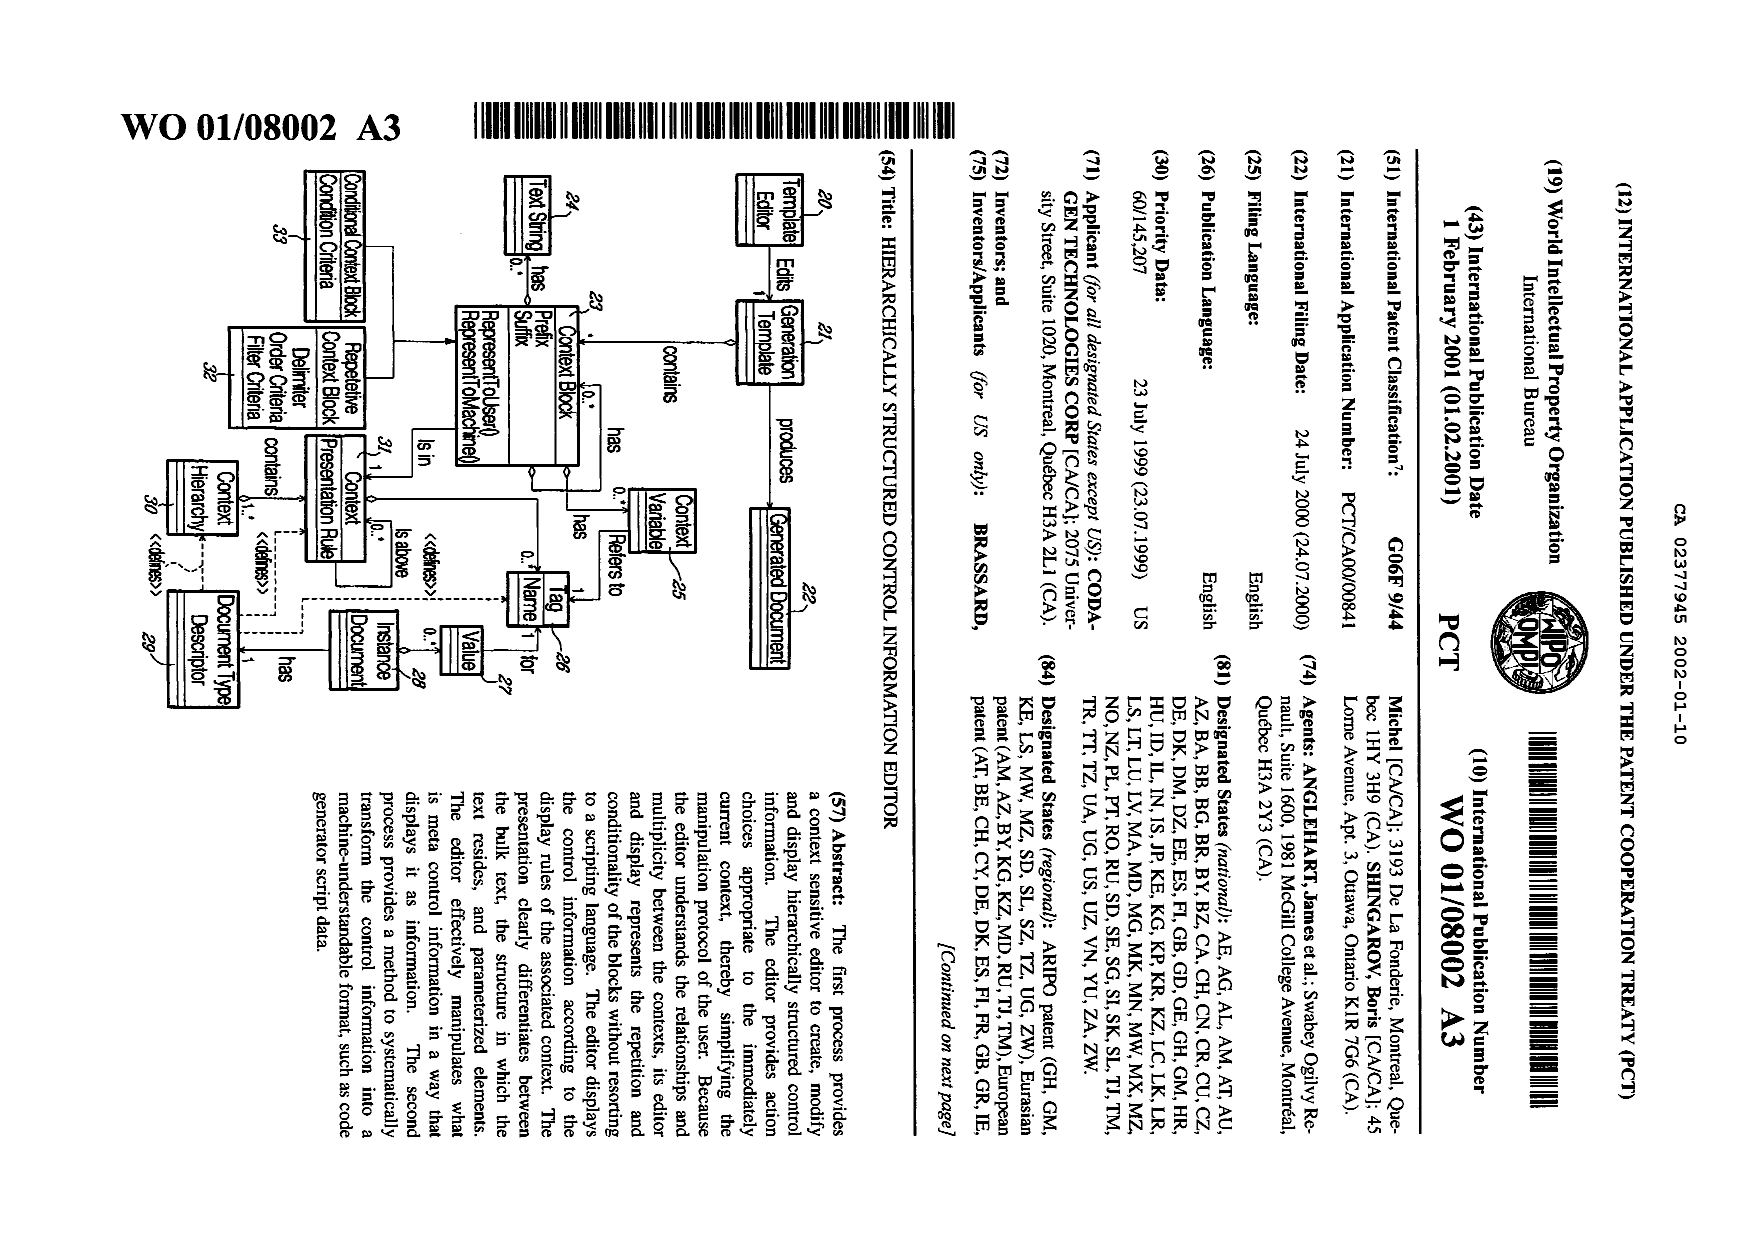 Document de brevet canadien 2377945. Abr%C3%A9g%C3%A9 20011210. Image 1 de 2